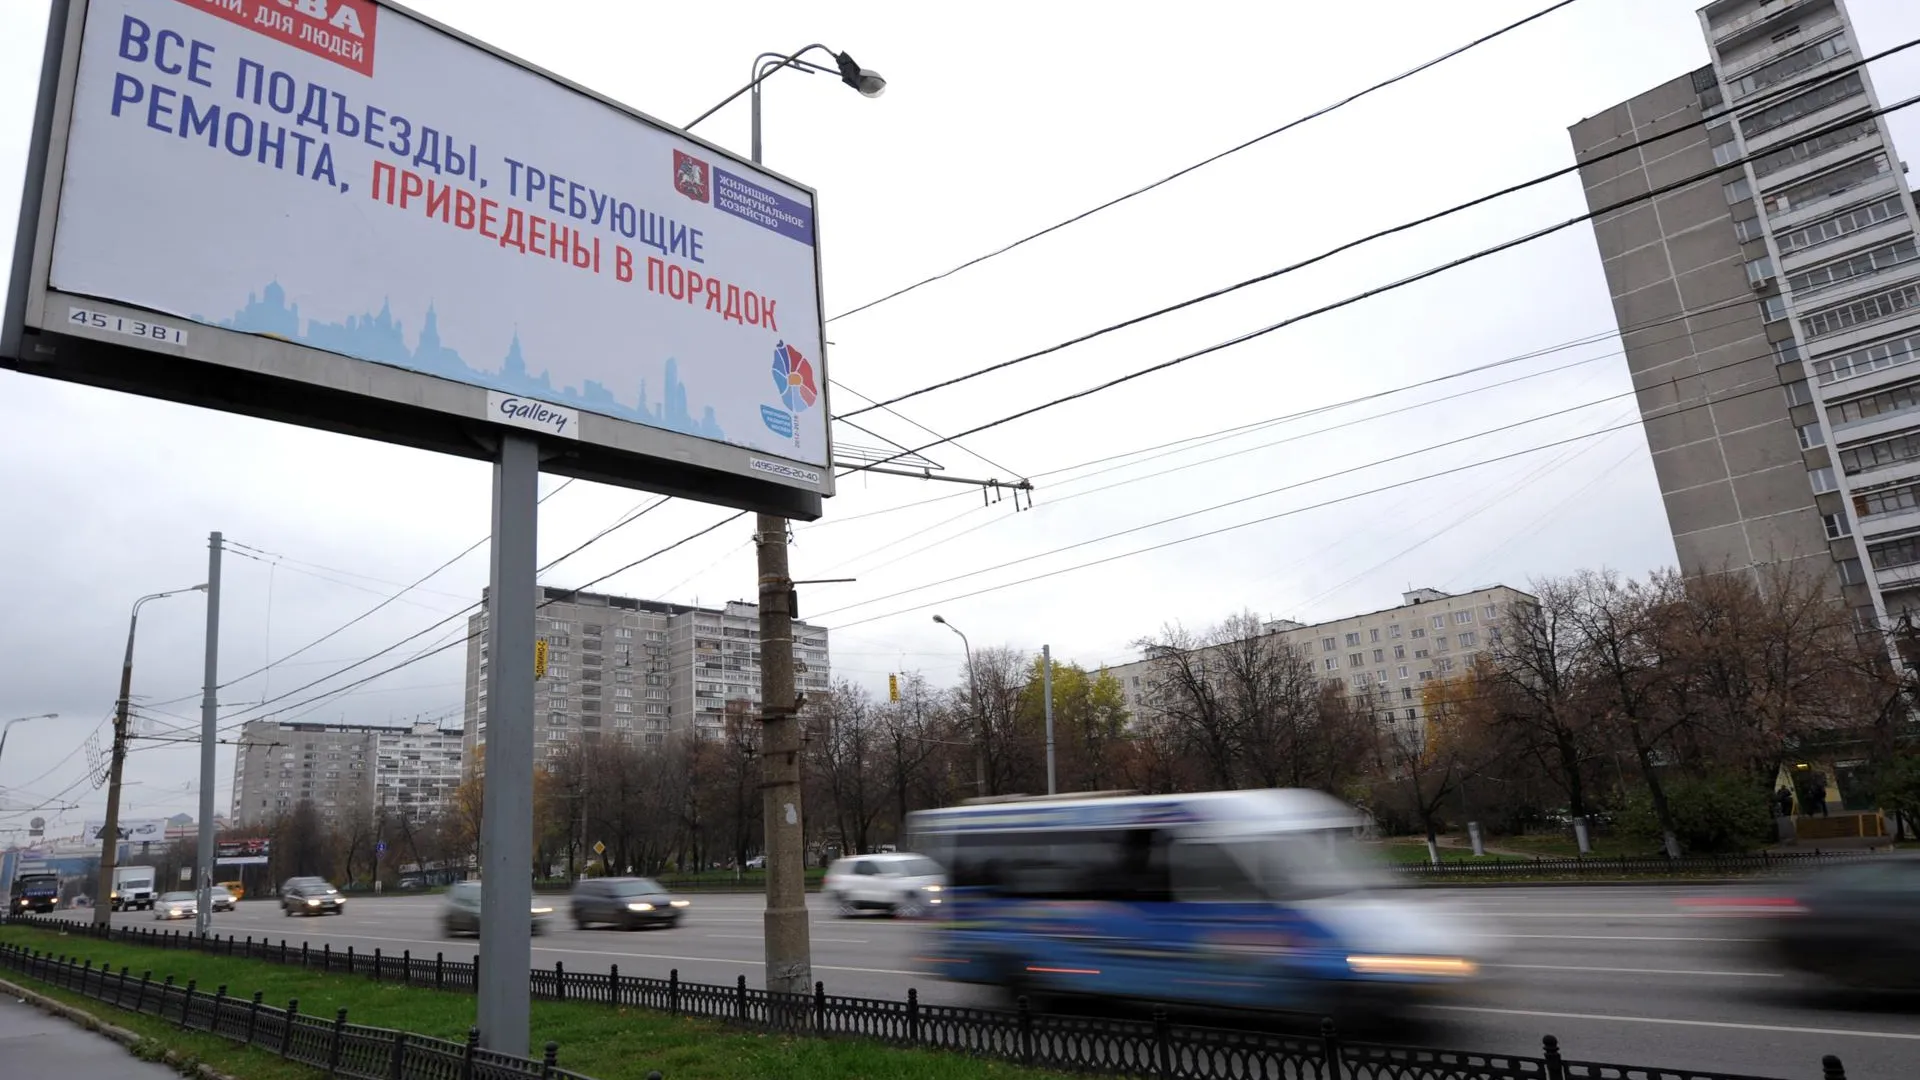 Почти 1 млрд руб получит Одинцовский район за размещение наружной рекламы